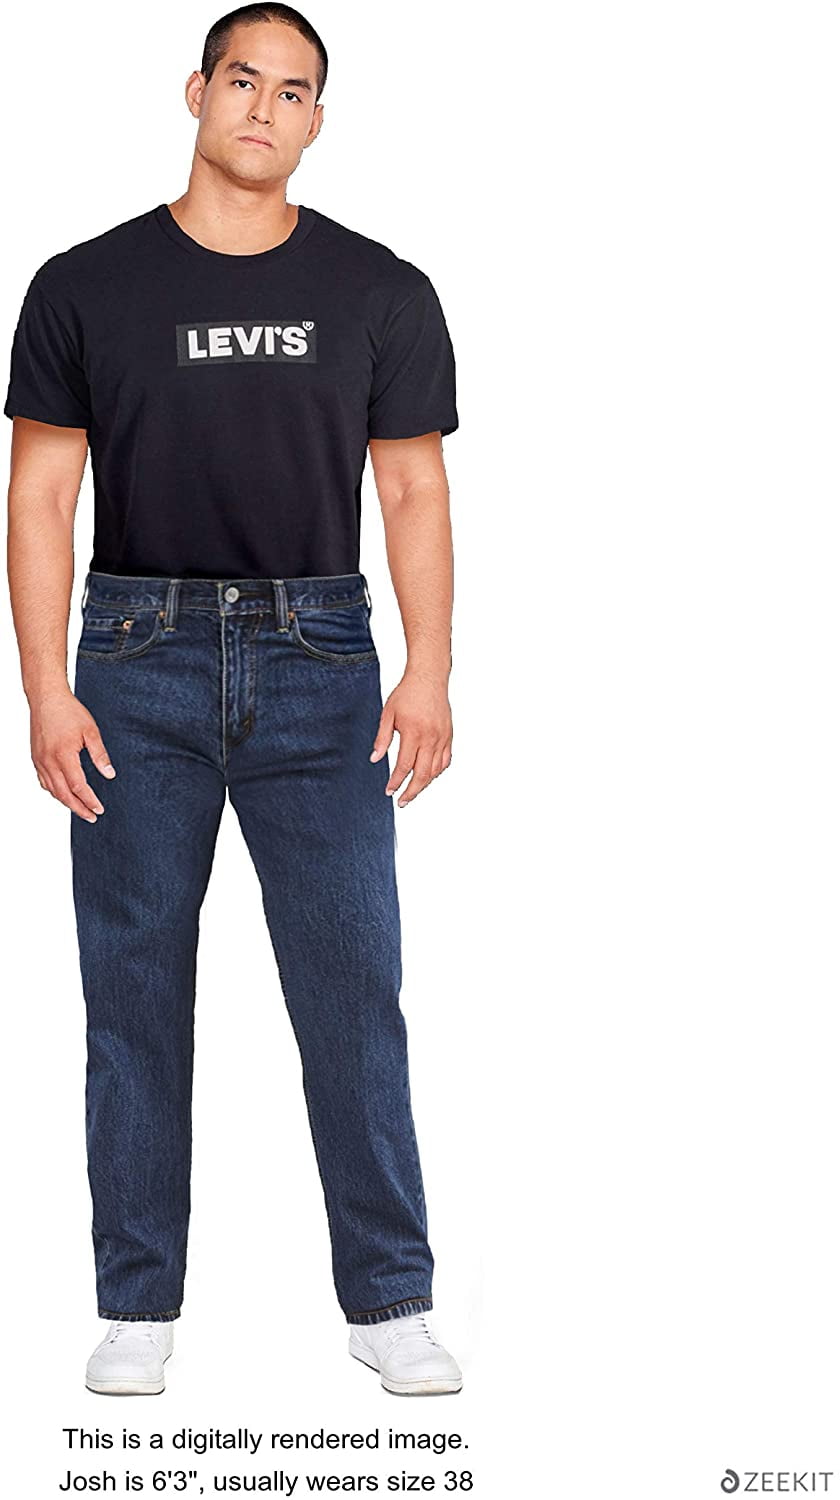 Levis Mens 550 Relaxed Fit Jeans Big Tall 40W x 38L Dark Stonewash